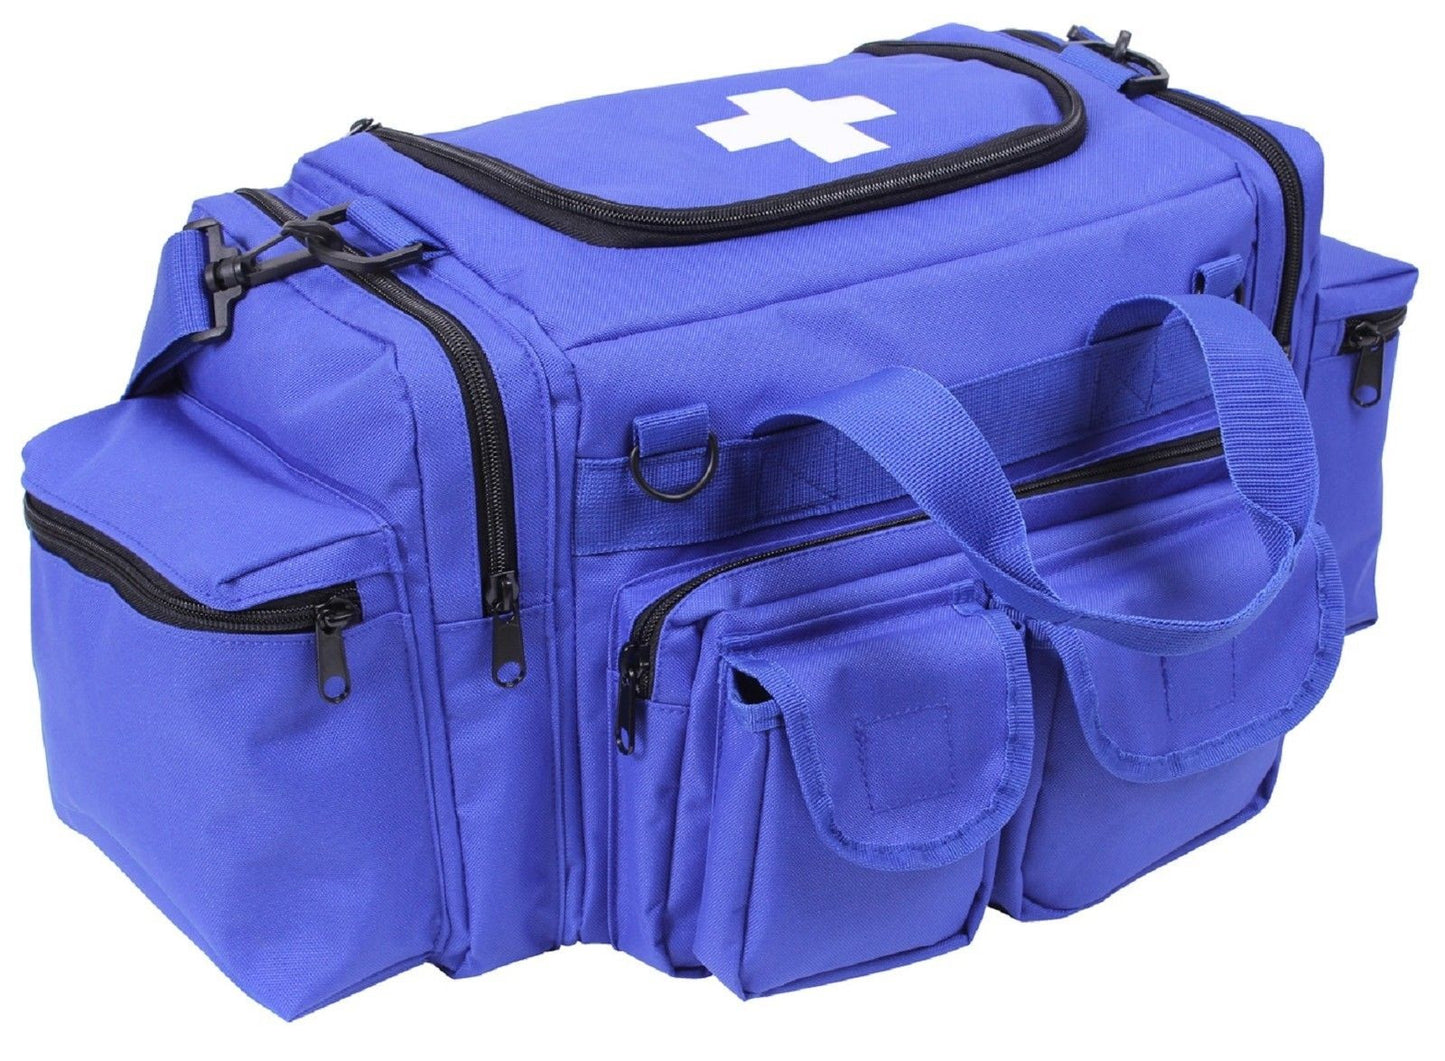 Blue EMT Field Bag w/ Cross - Rothco 22" 6-Pocket Medic Emergency Shoulder Bag